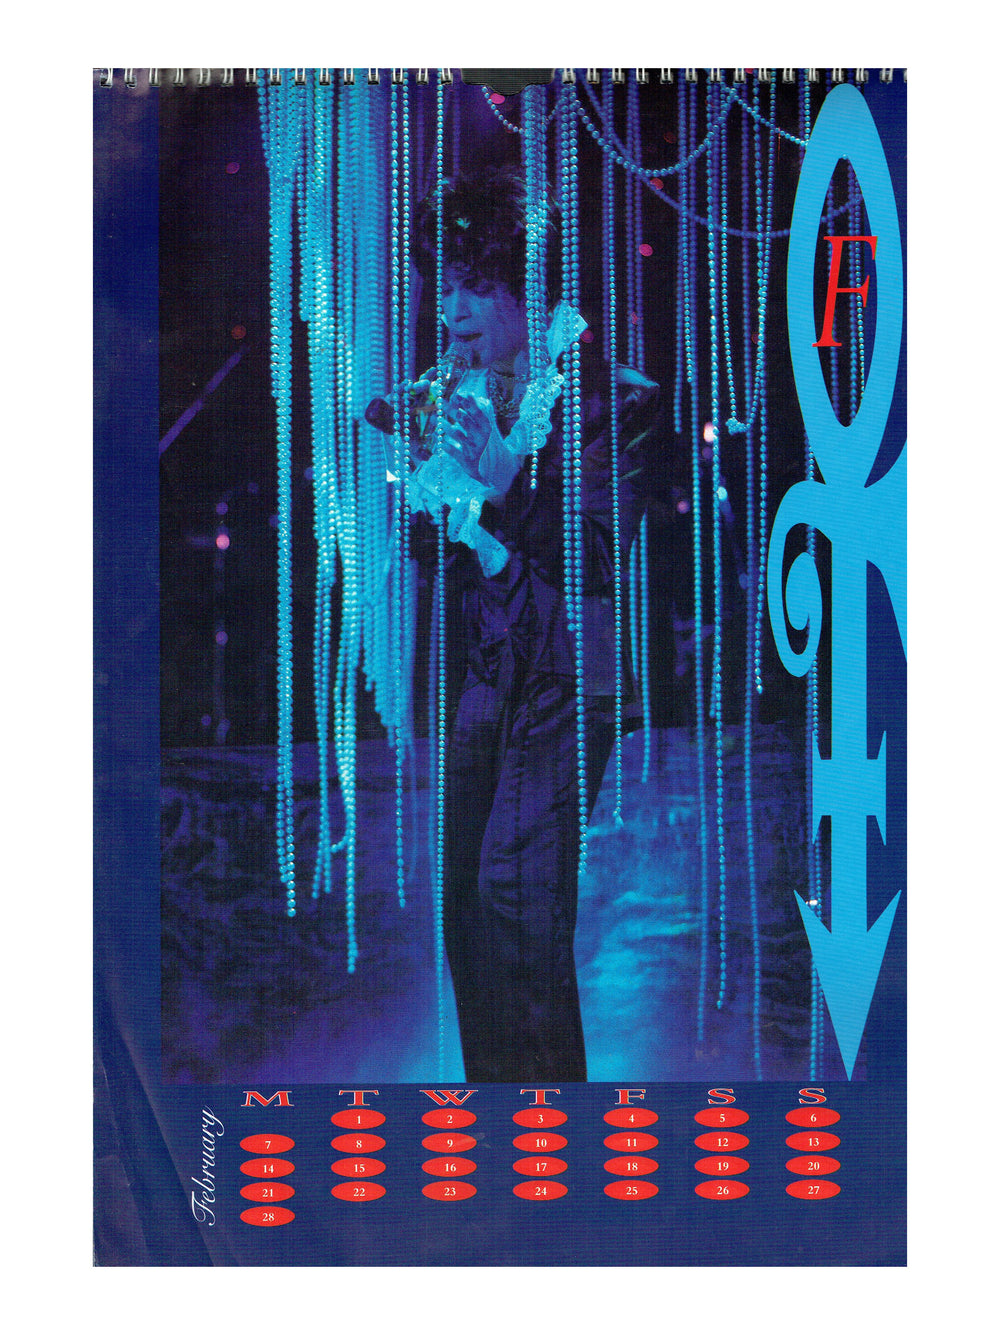 Prince Official Paisley Park Brockum Calendar 1994